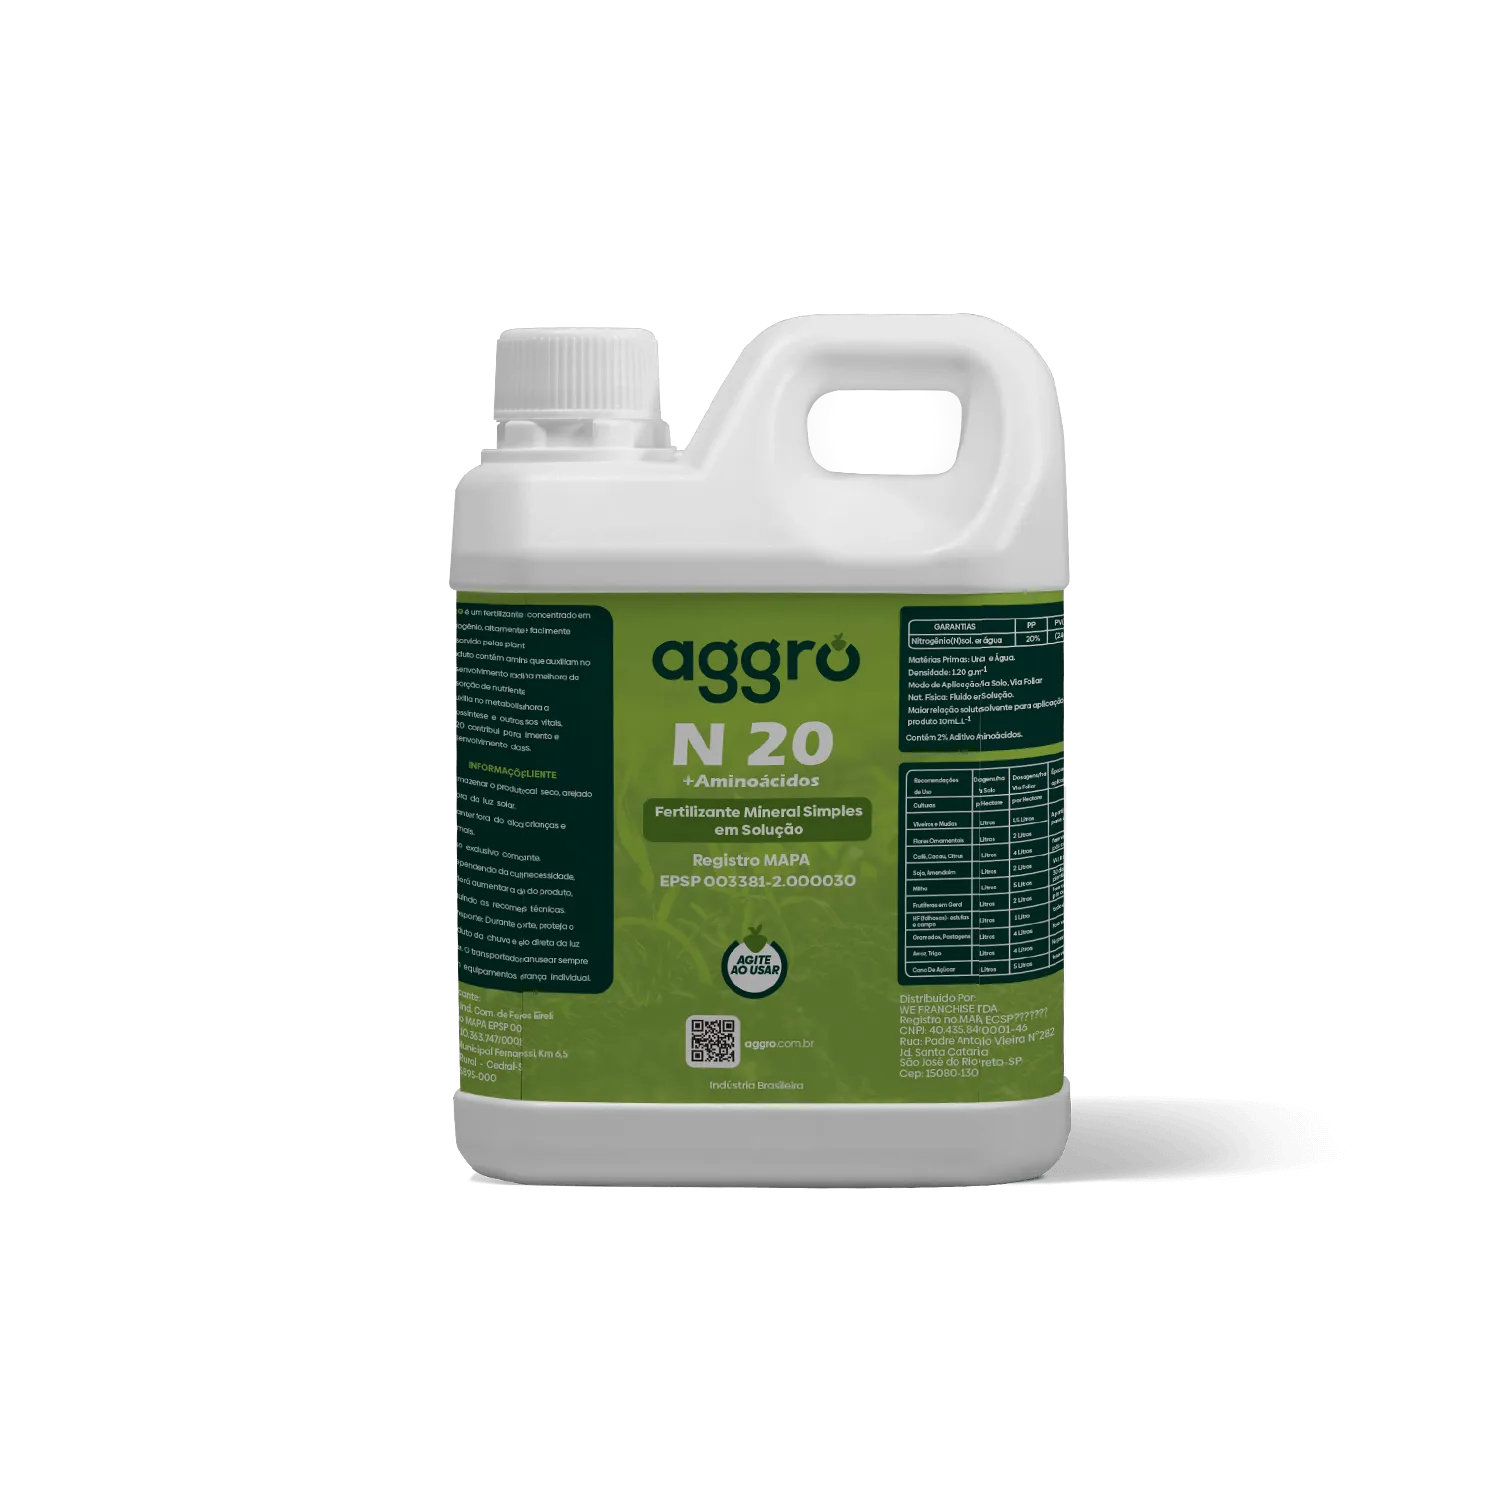 N20 + Aminoácidos Fertilizante Mineral Simples em Solução – 5 Litros